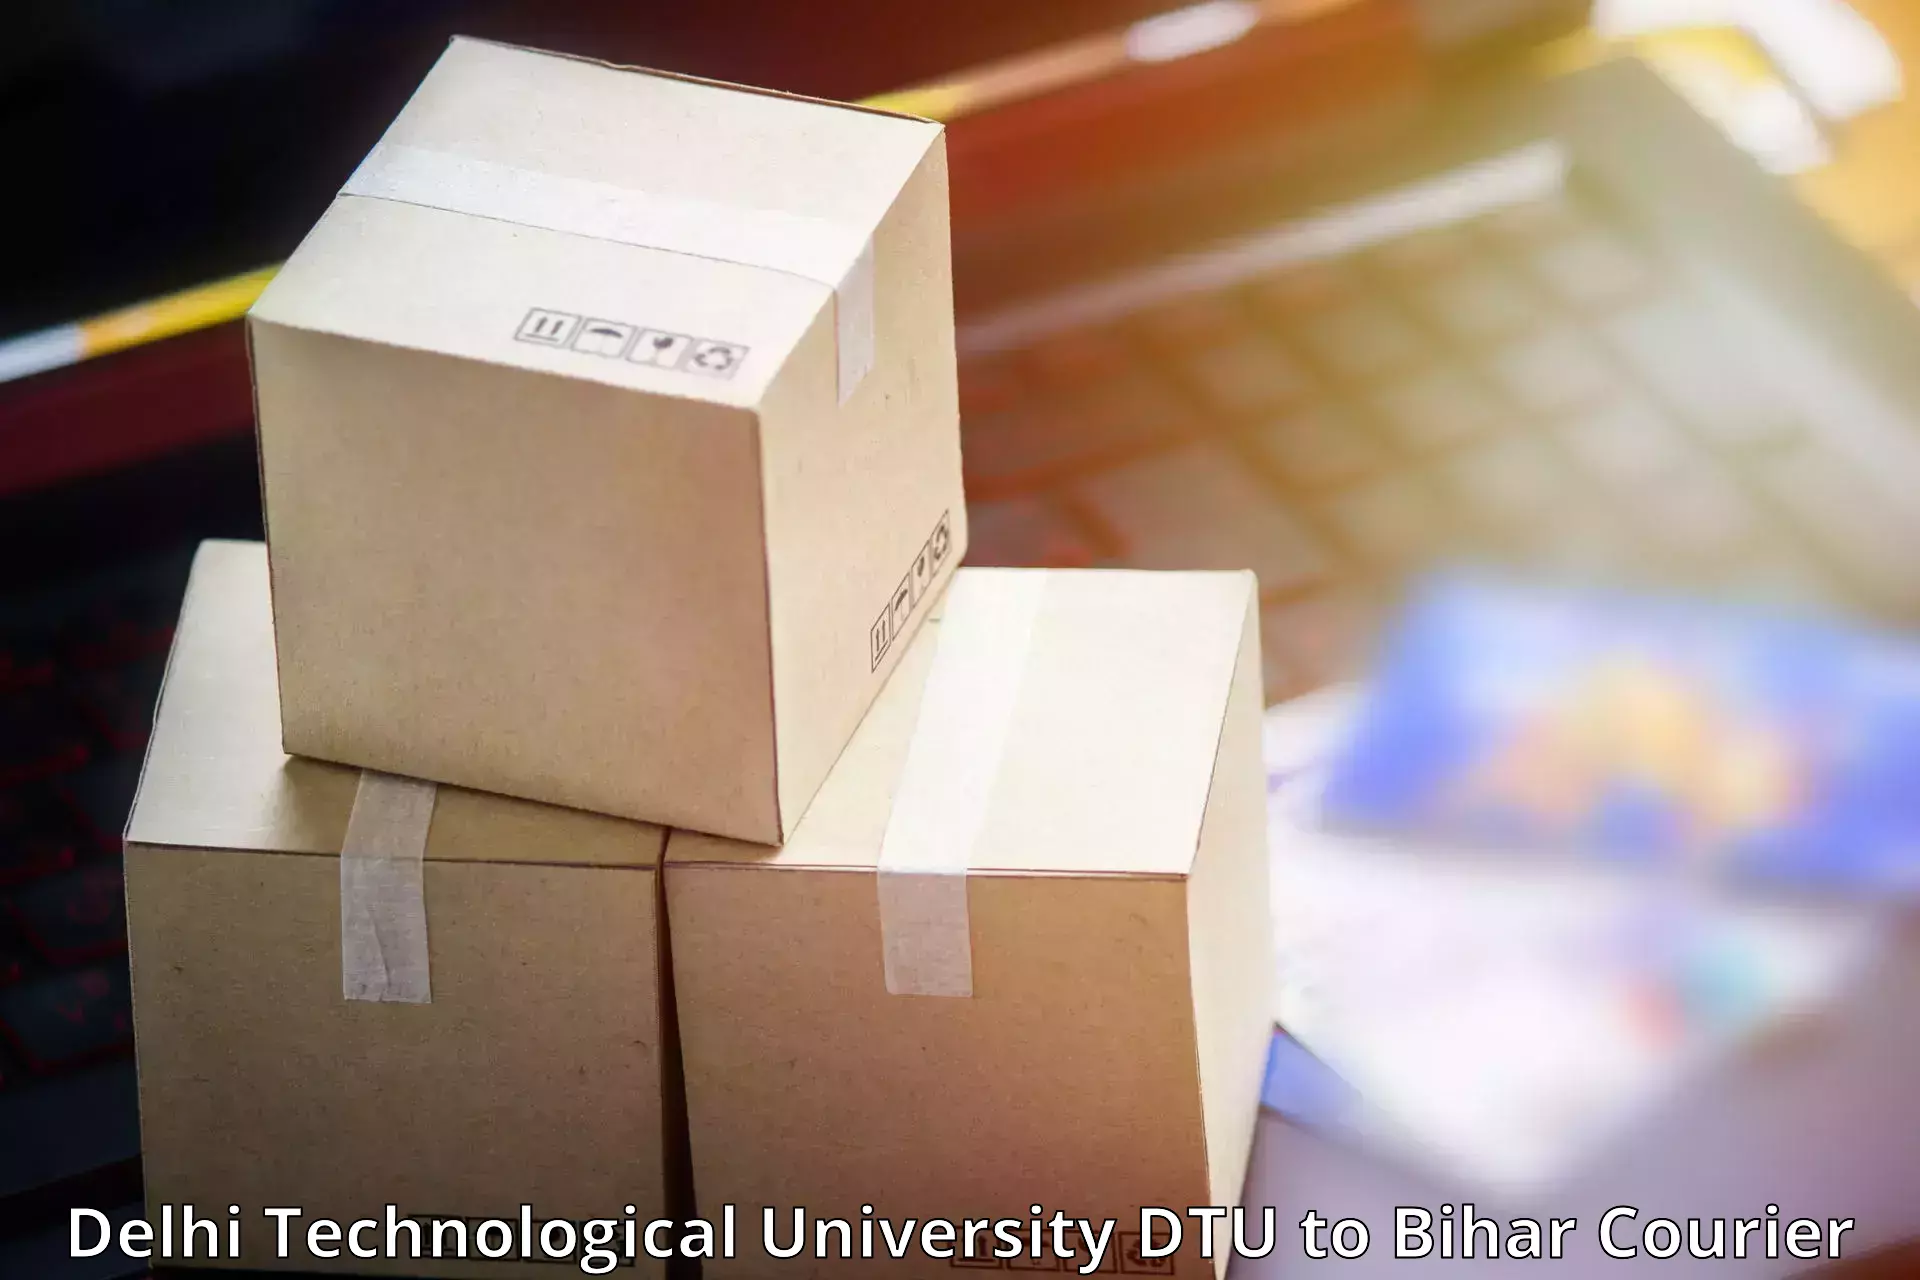 Expedited parcel delivery Delhi Technological University DTU to Tekari